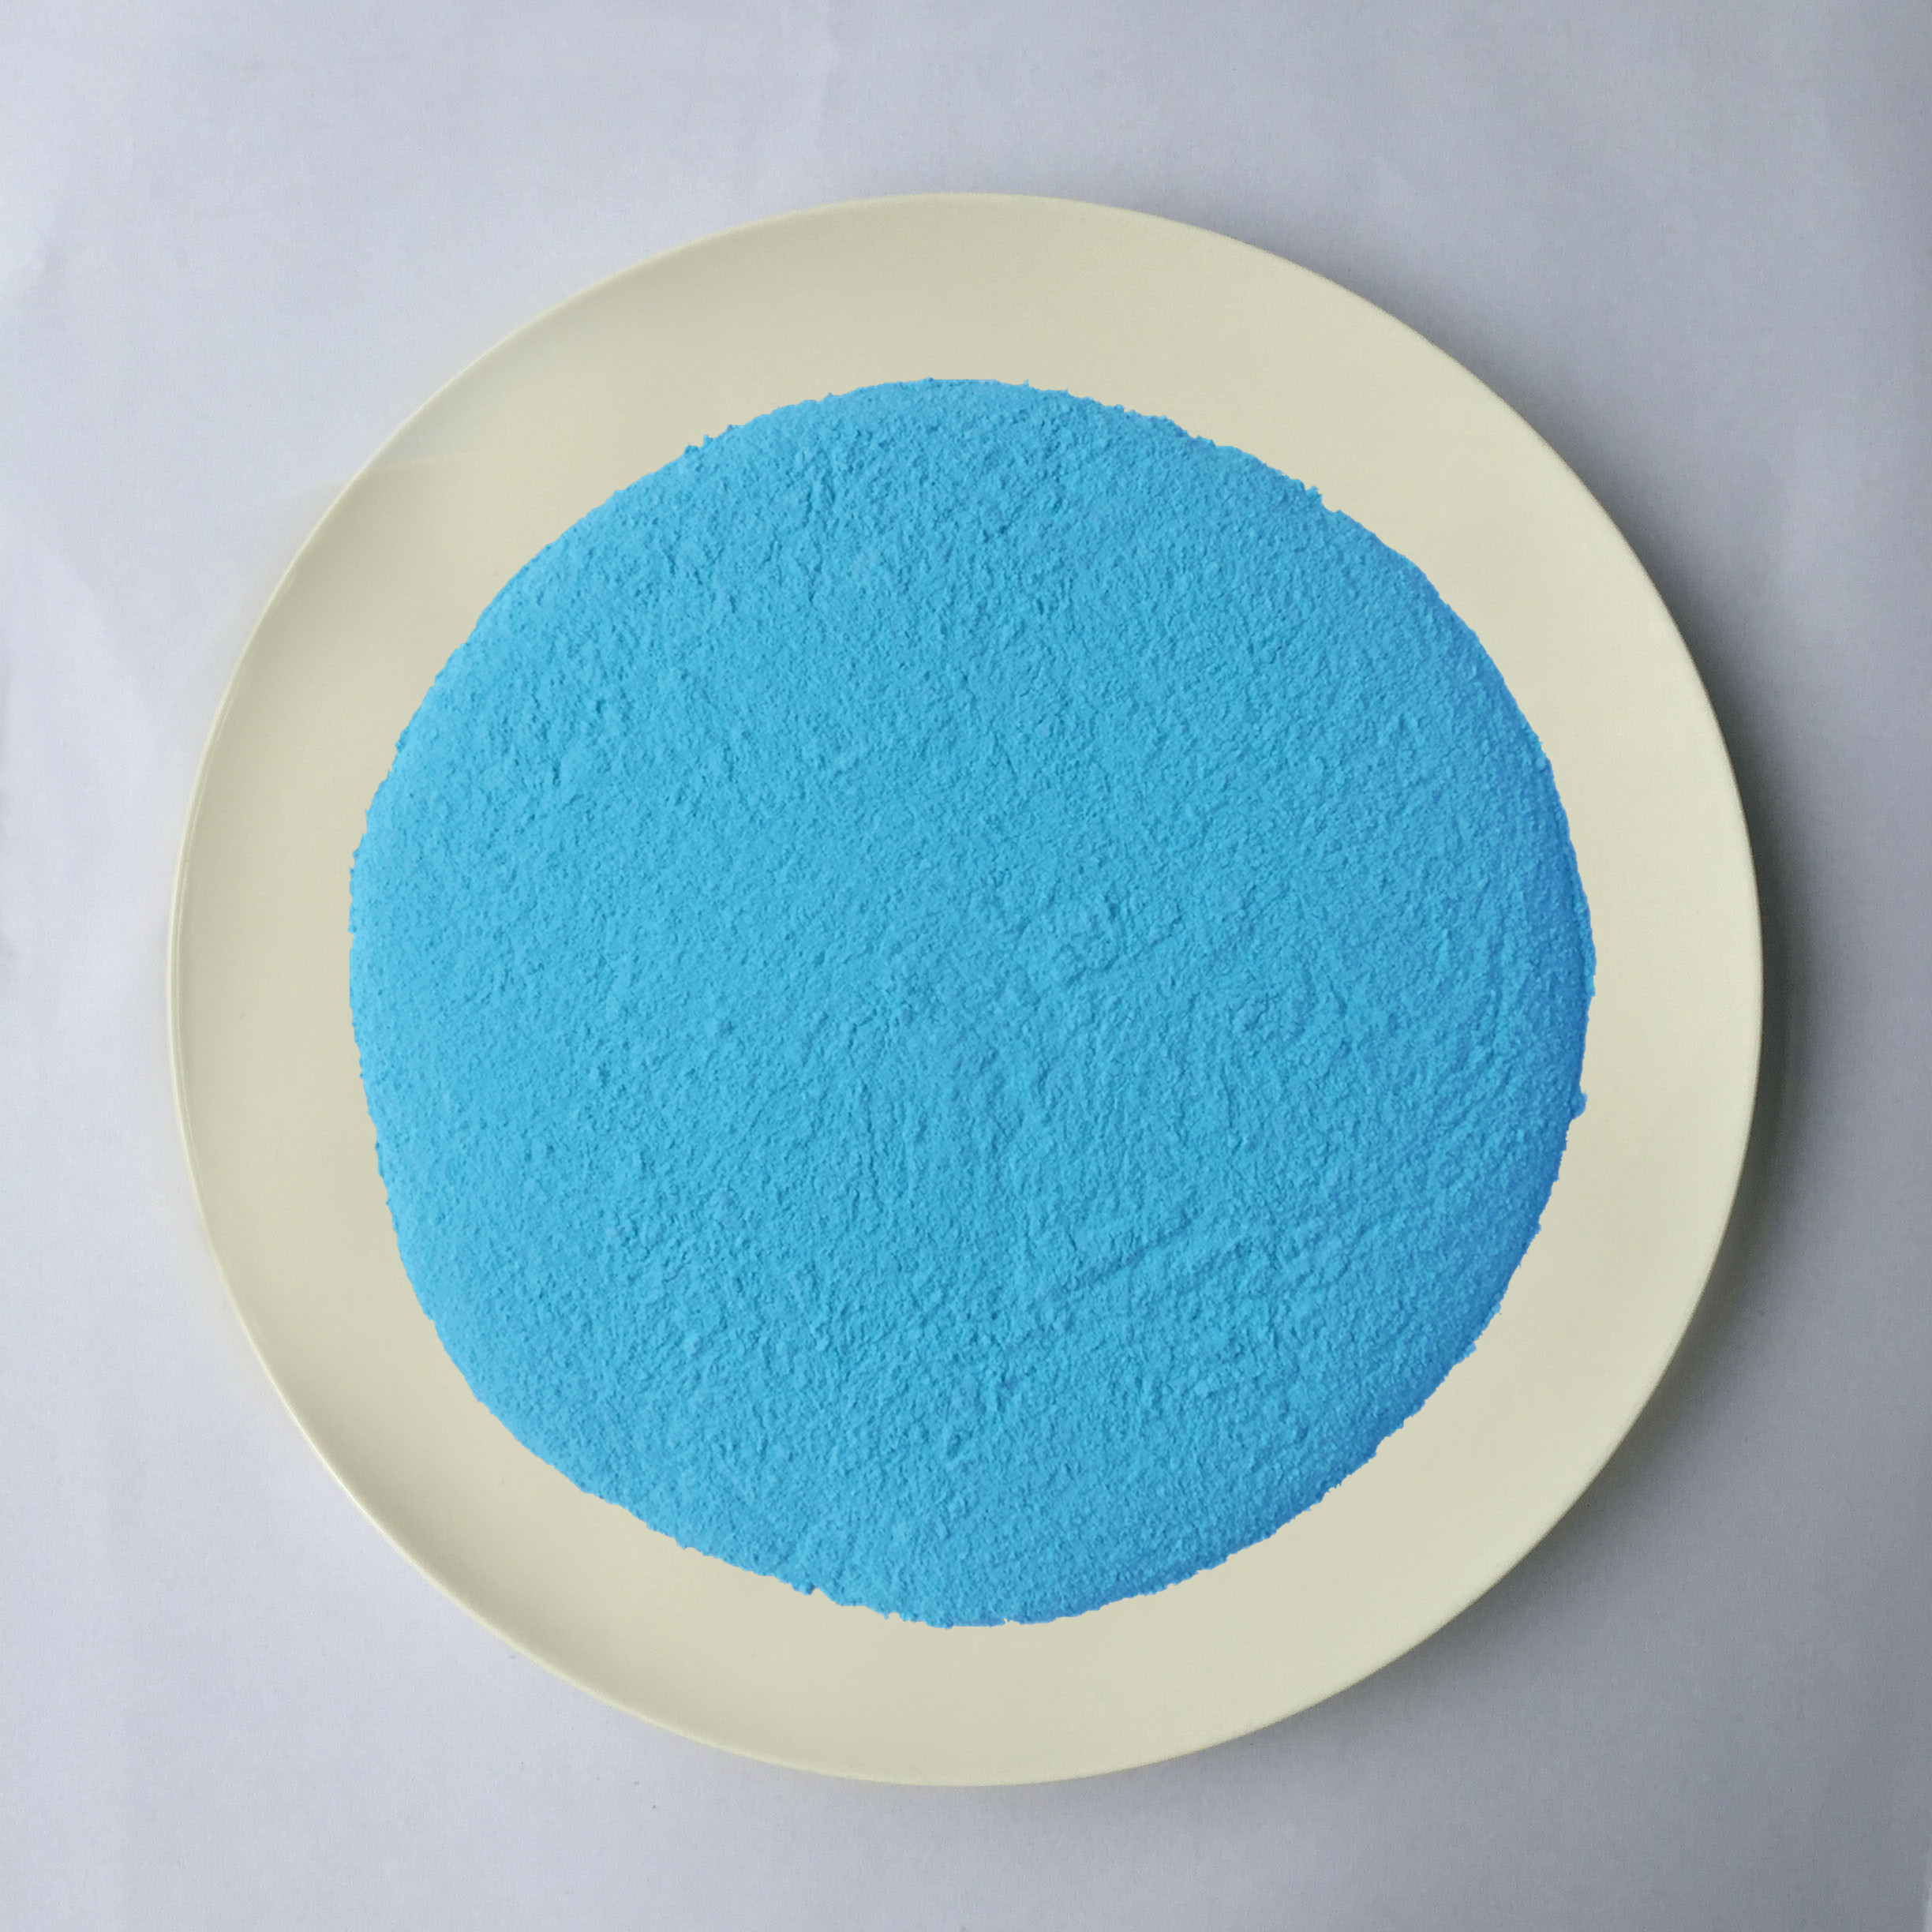 Pó moldando da melamina plástica azul brilhante da matéria prima